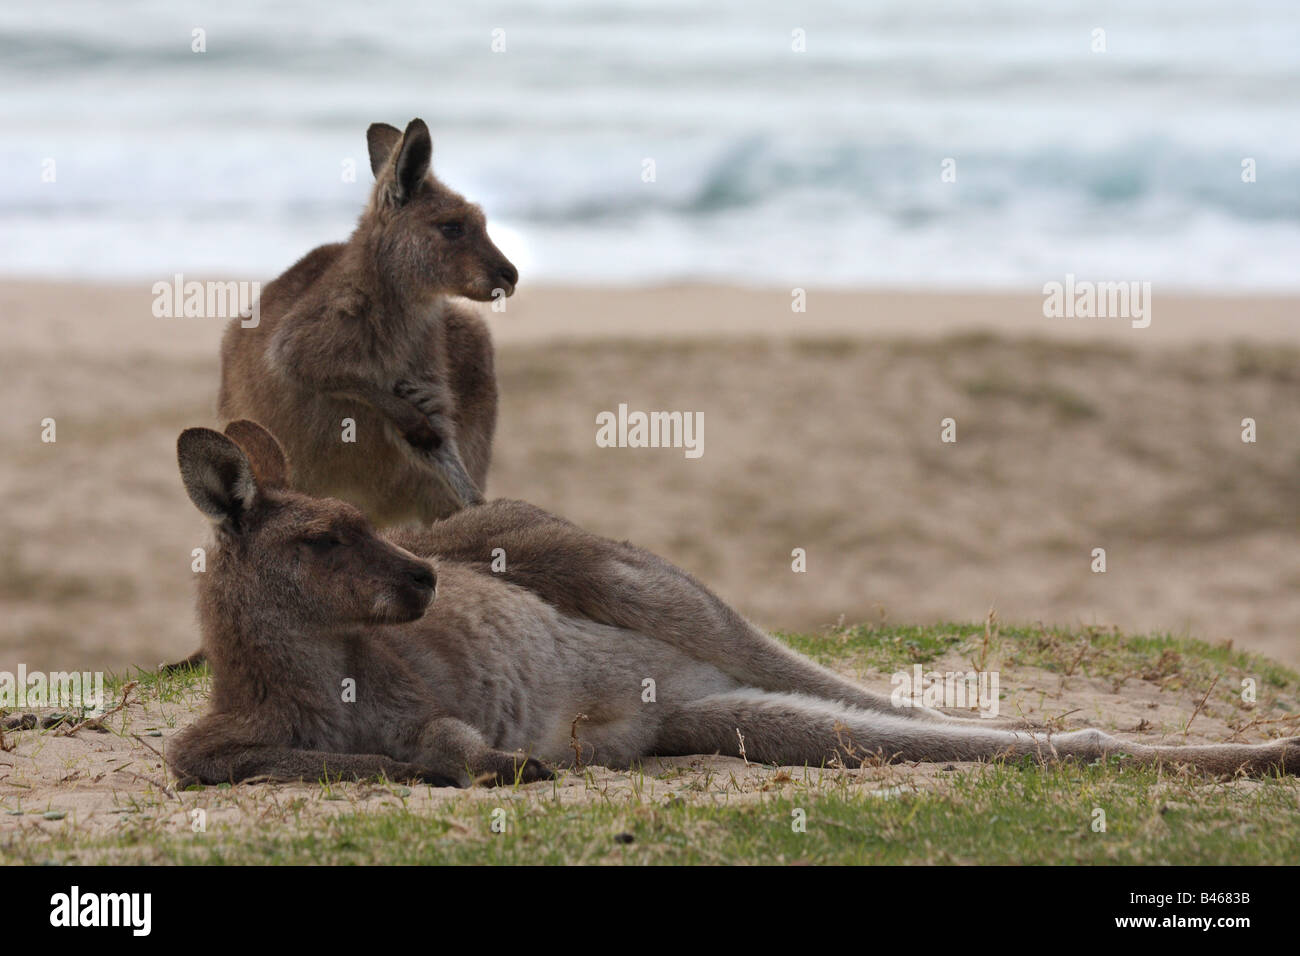 two kangaroos on beach Stock Photo